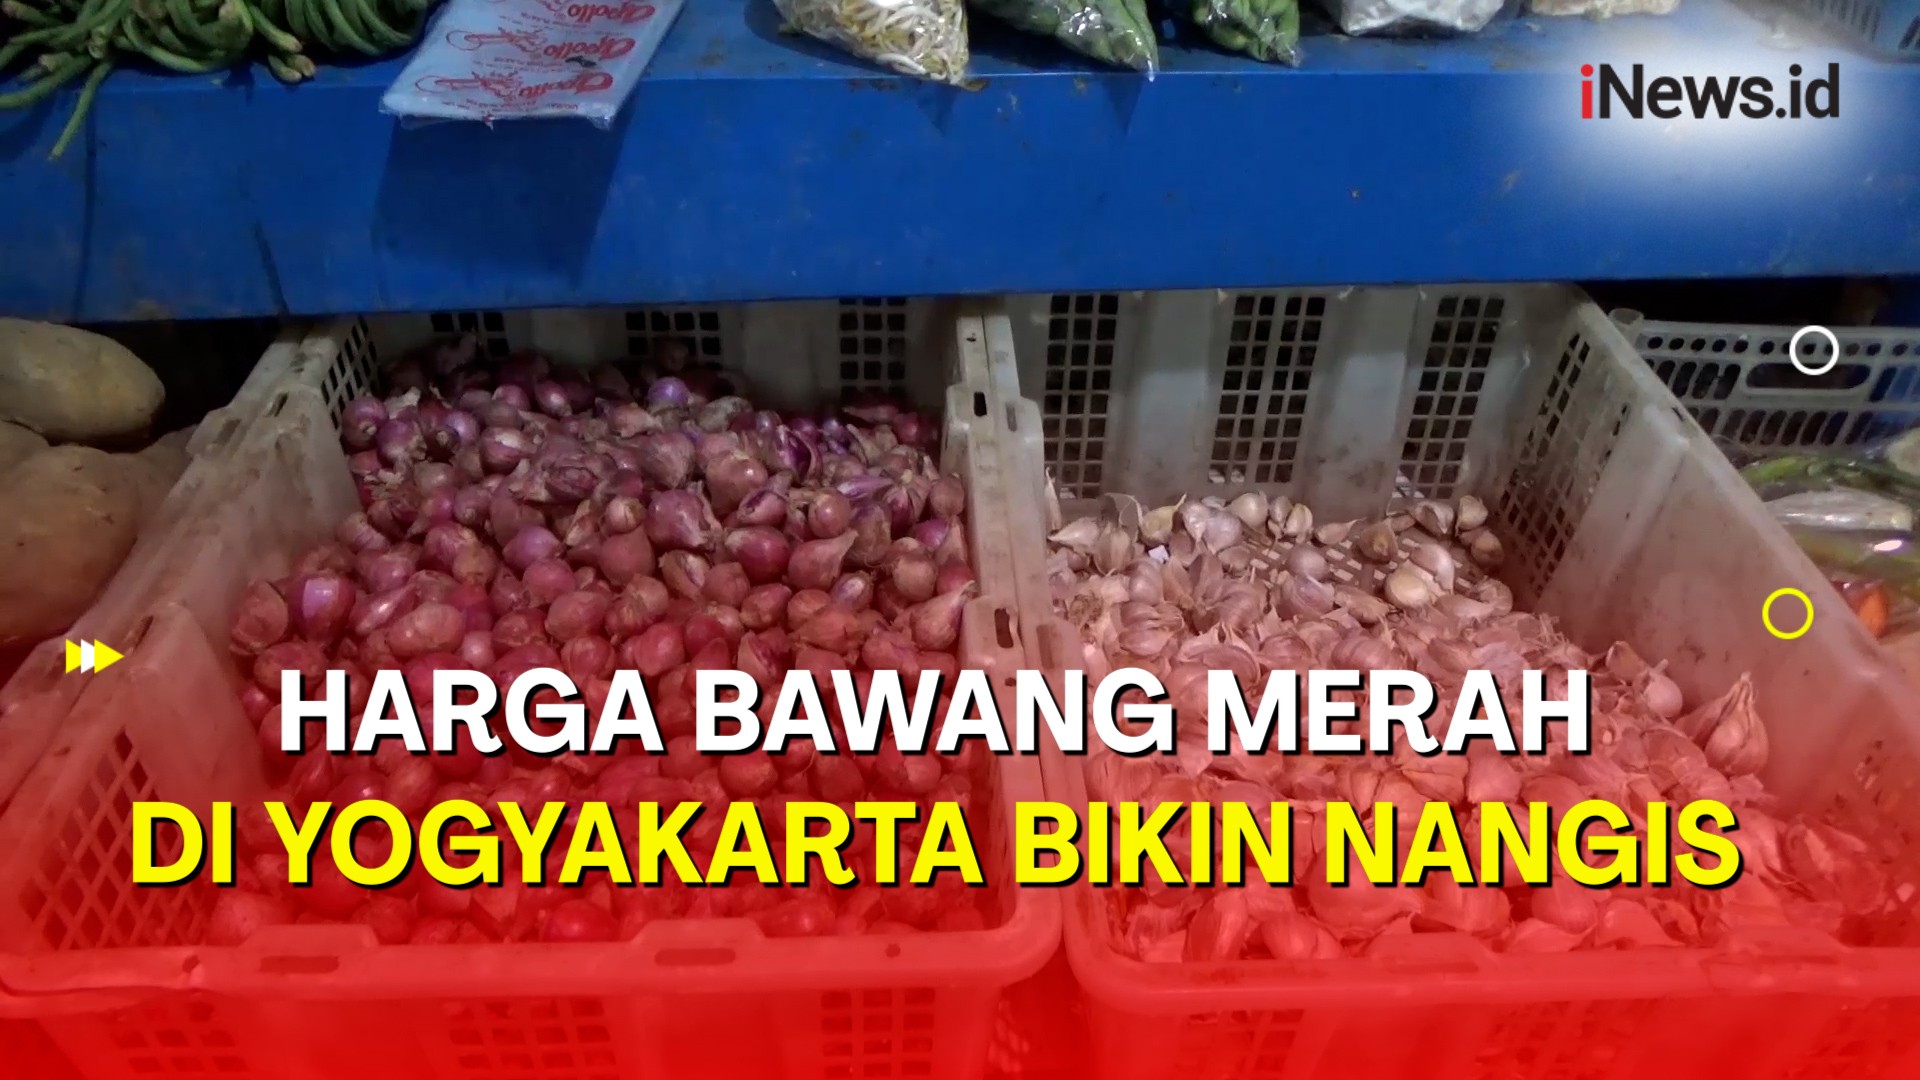 Harga Bawang Merah di Yogyakarta Menggila, Ini Penyebabnya 